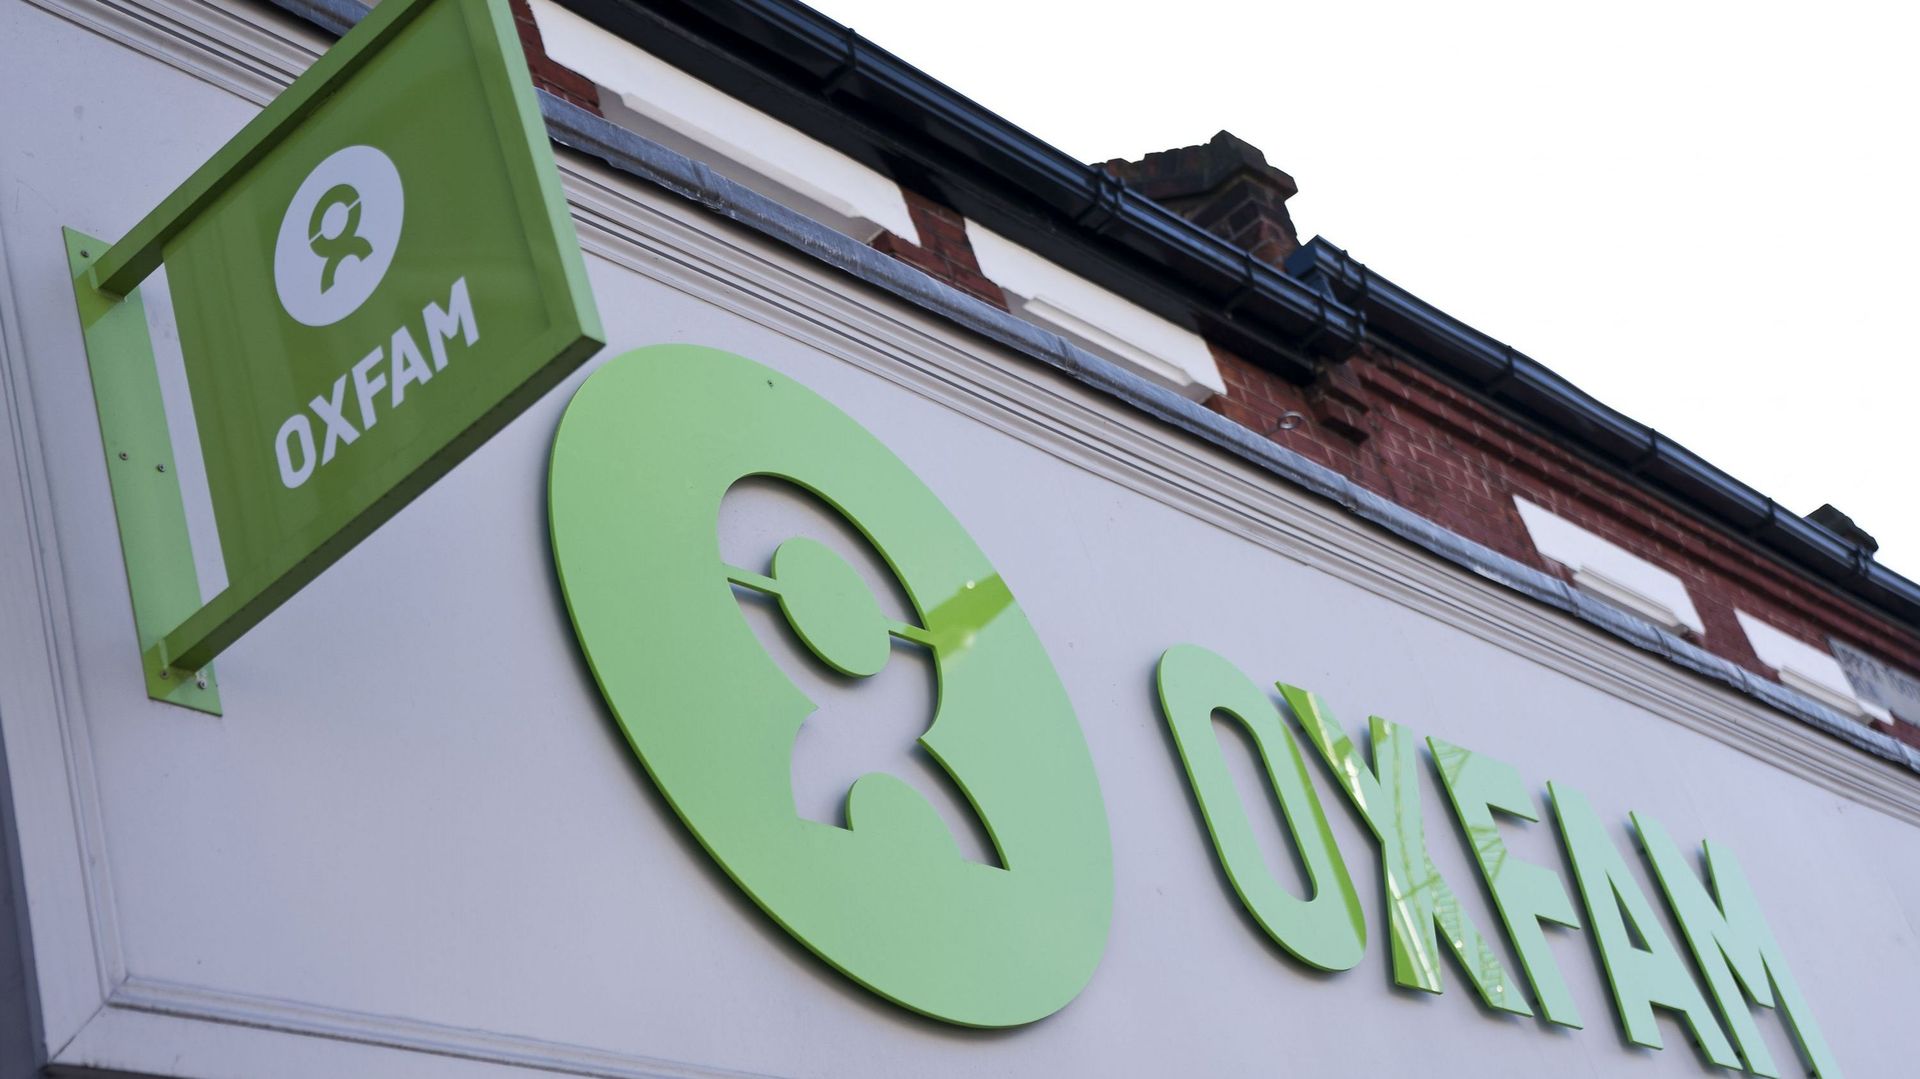 Scandale Oxfam: des "défaillances majeures" mais aussi des "progrès accomplis", conclut un rapport indépendant